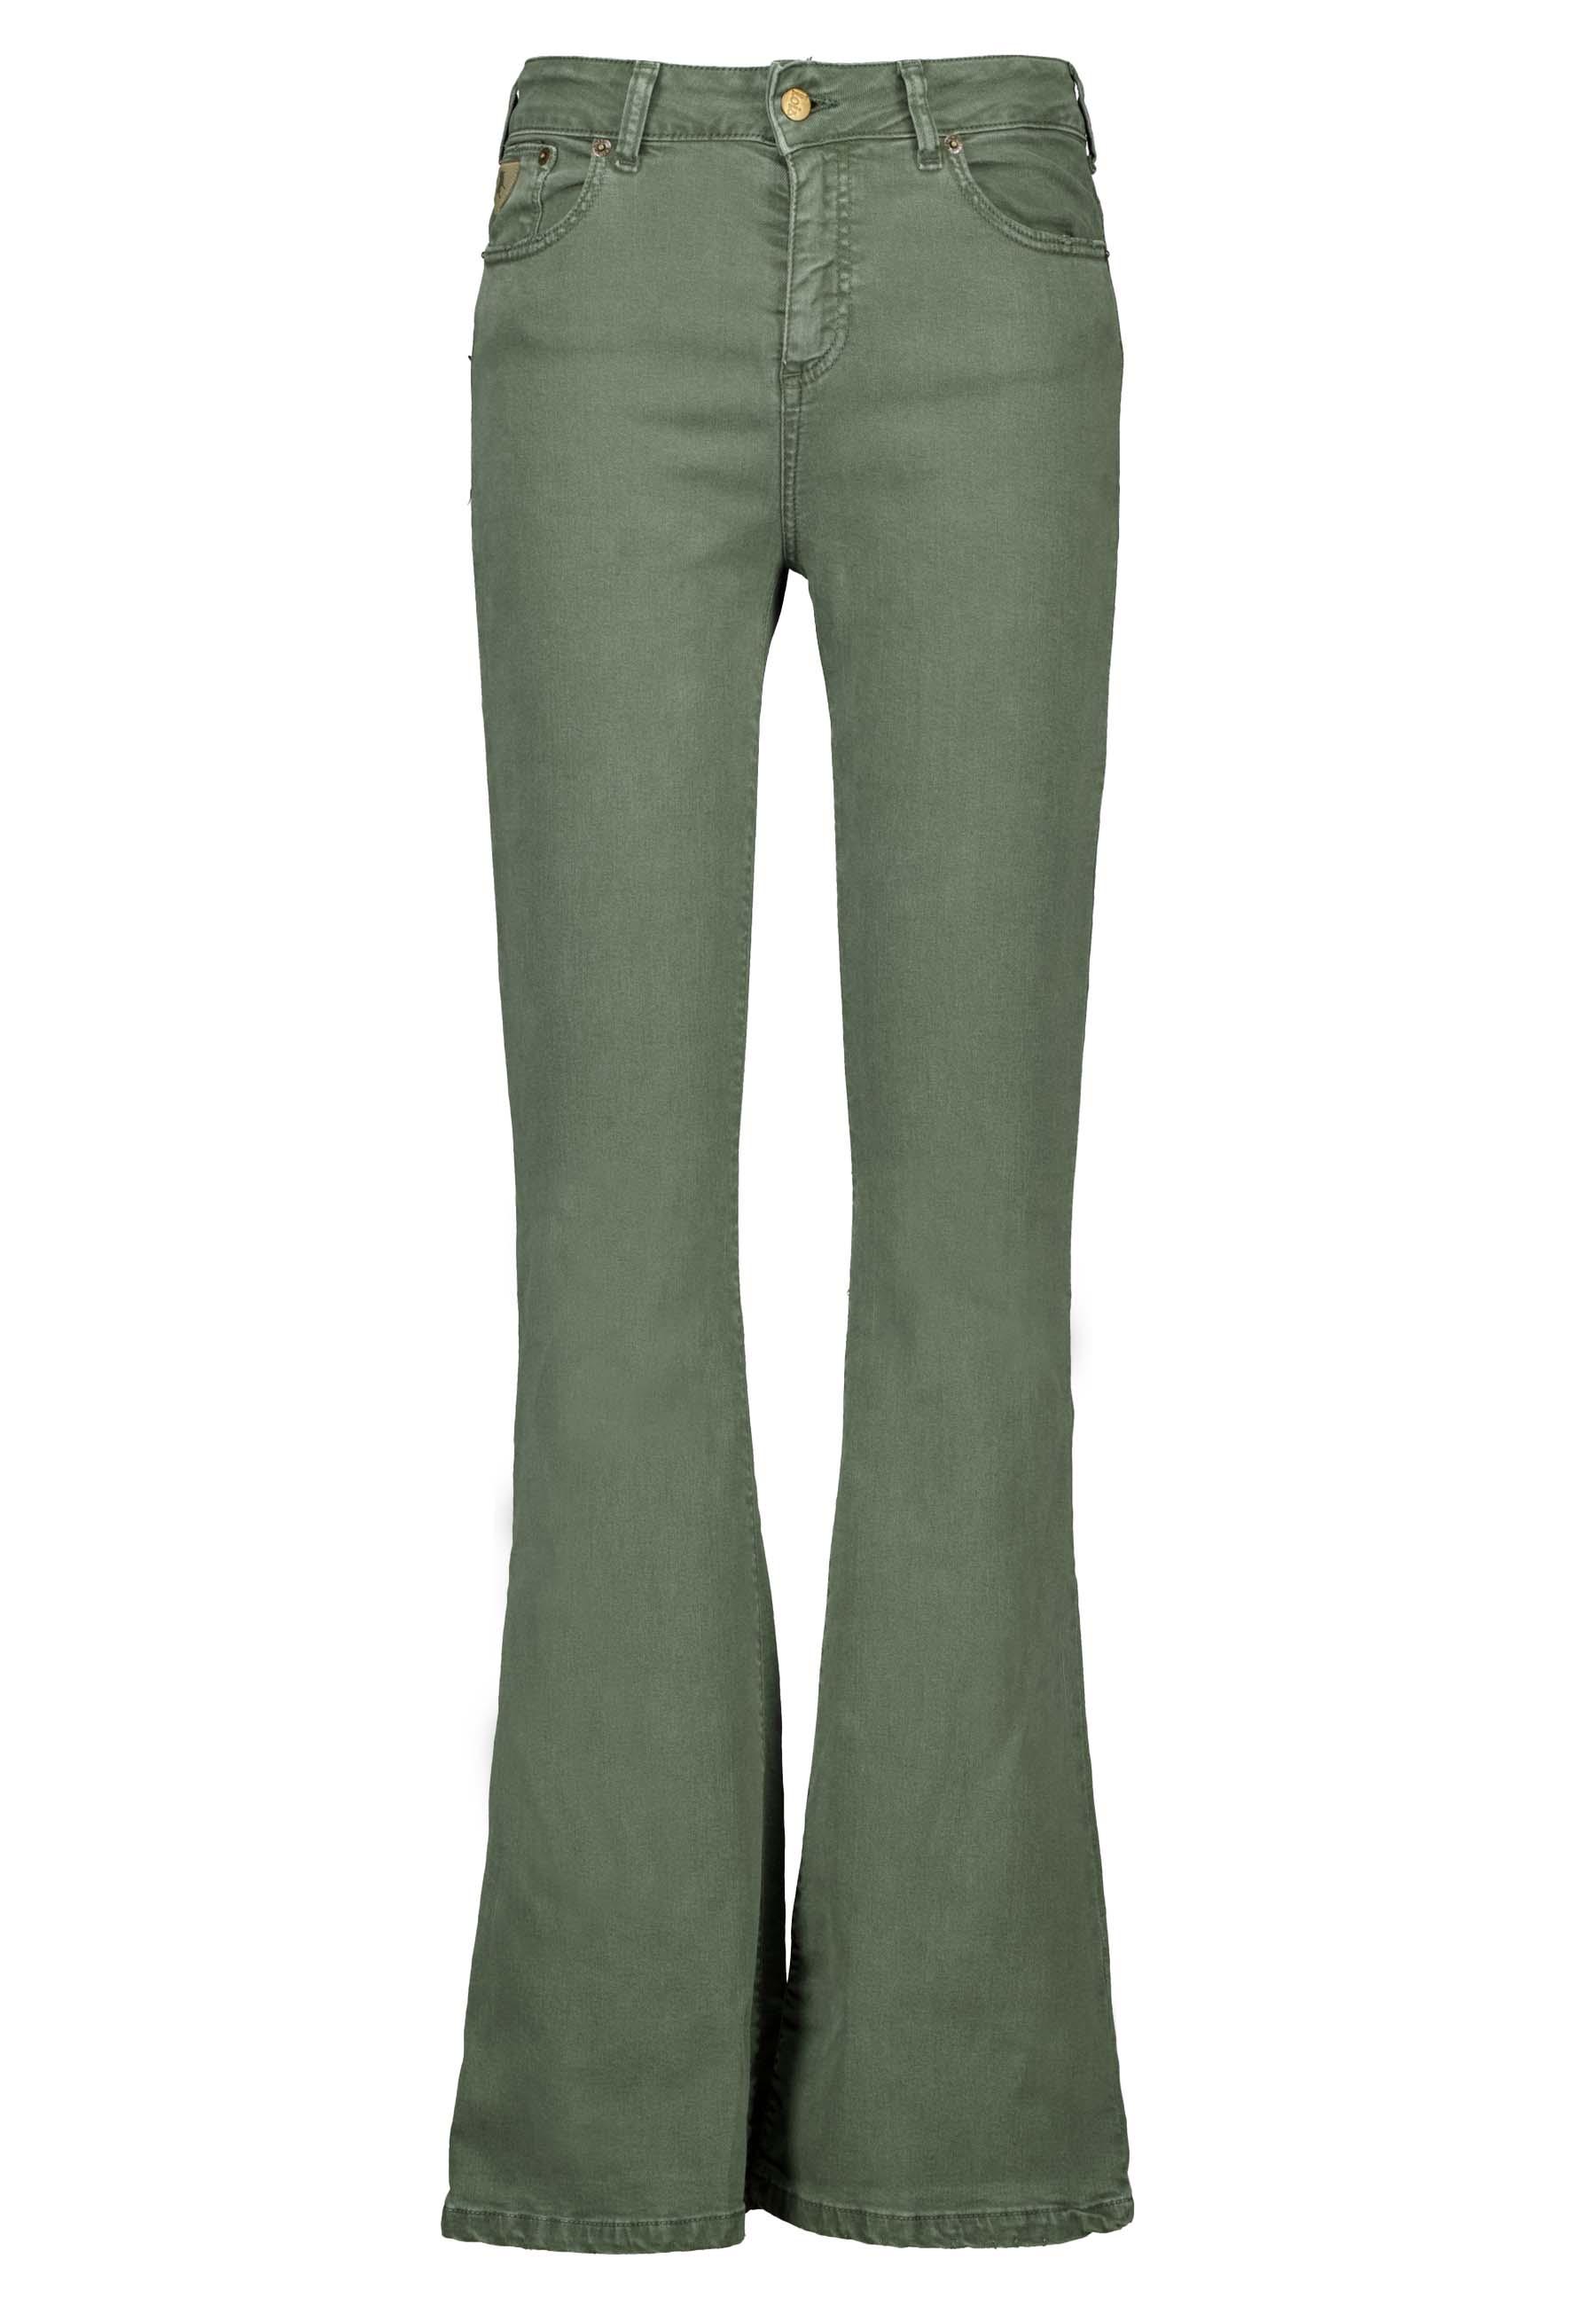 Lois Raval jeans groen Dames maat 29/34